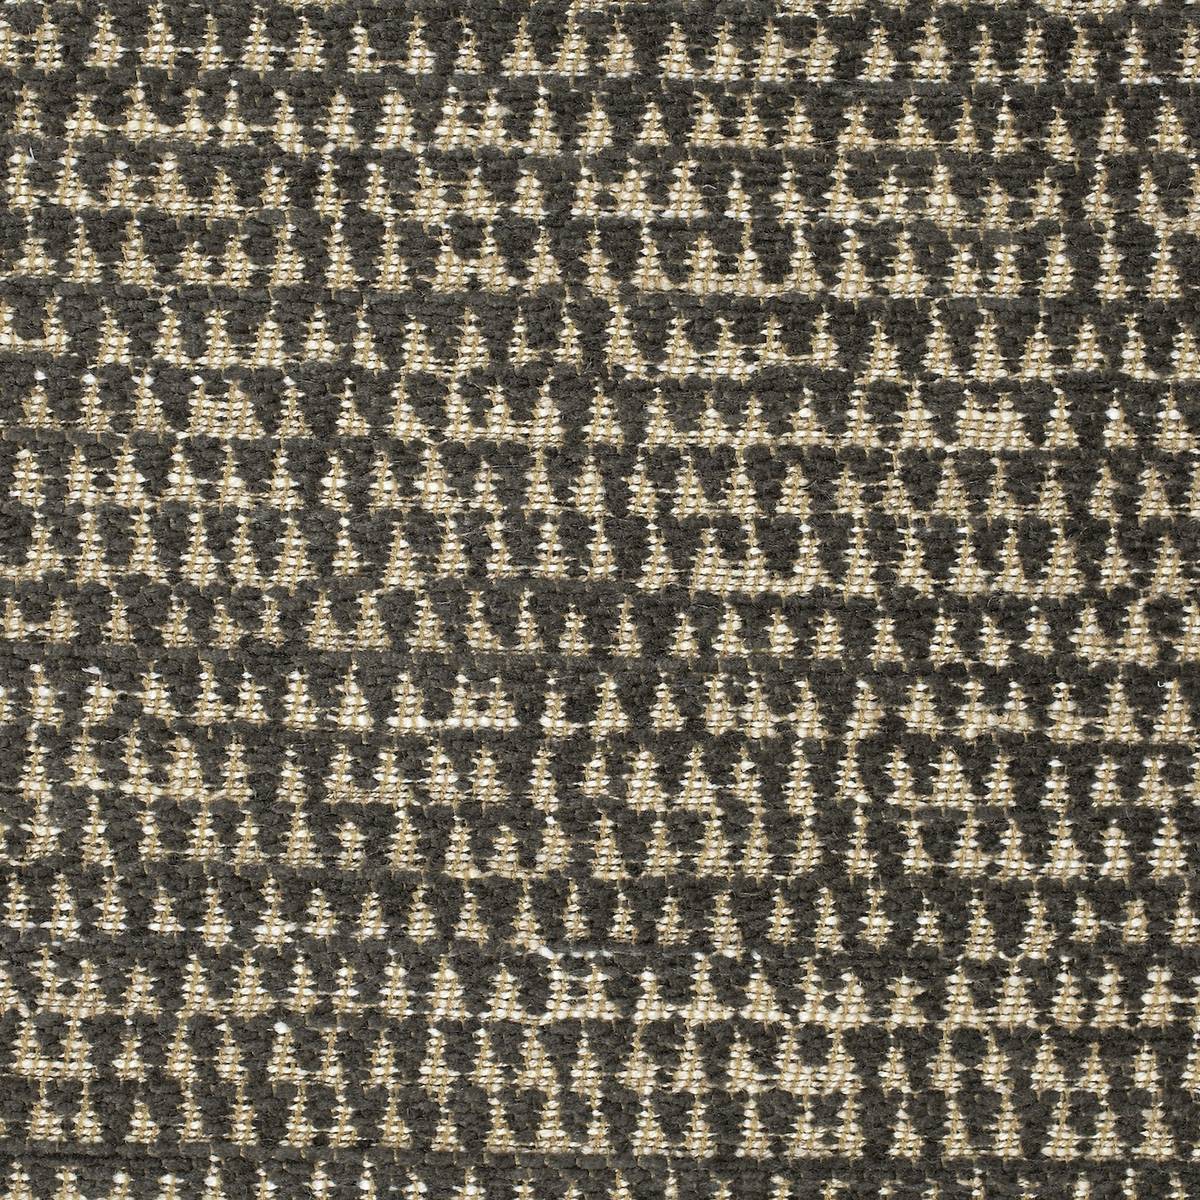 Merrington Charcoal Fabric by Zoffany